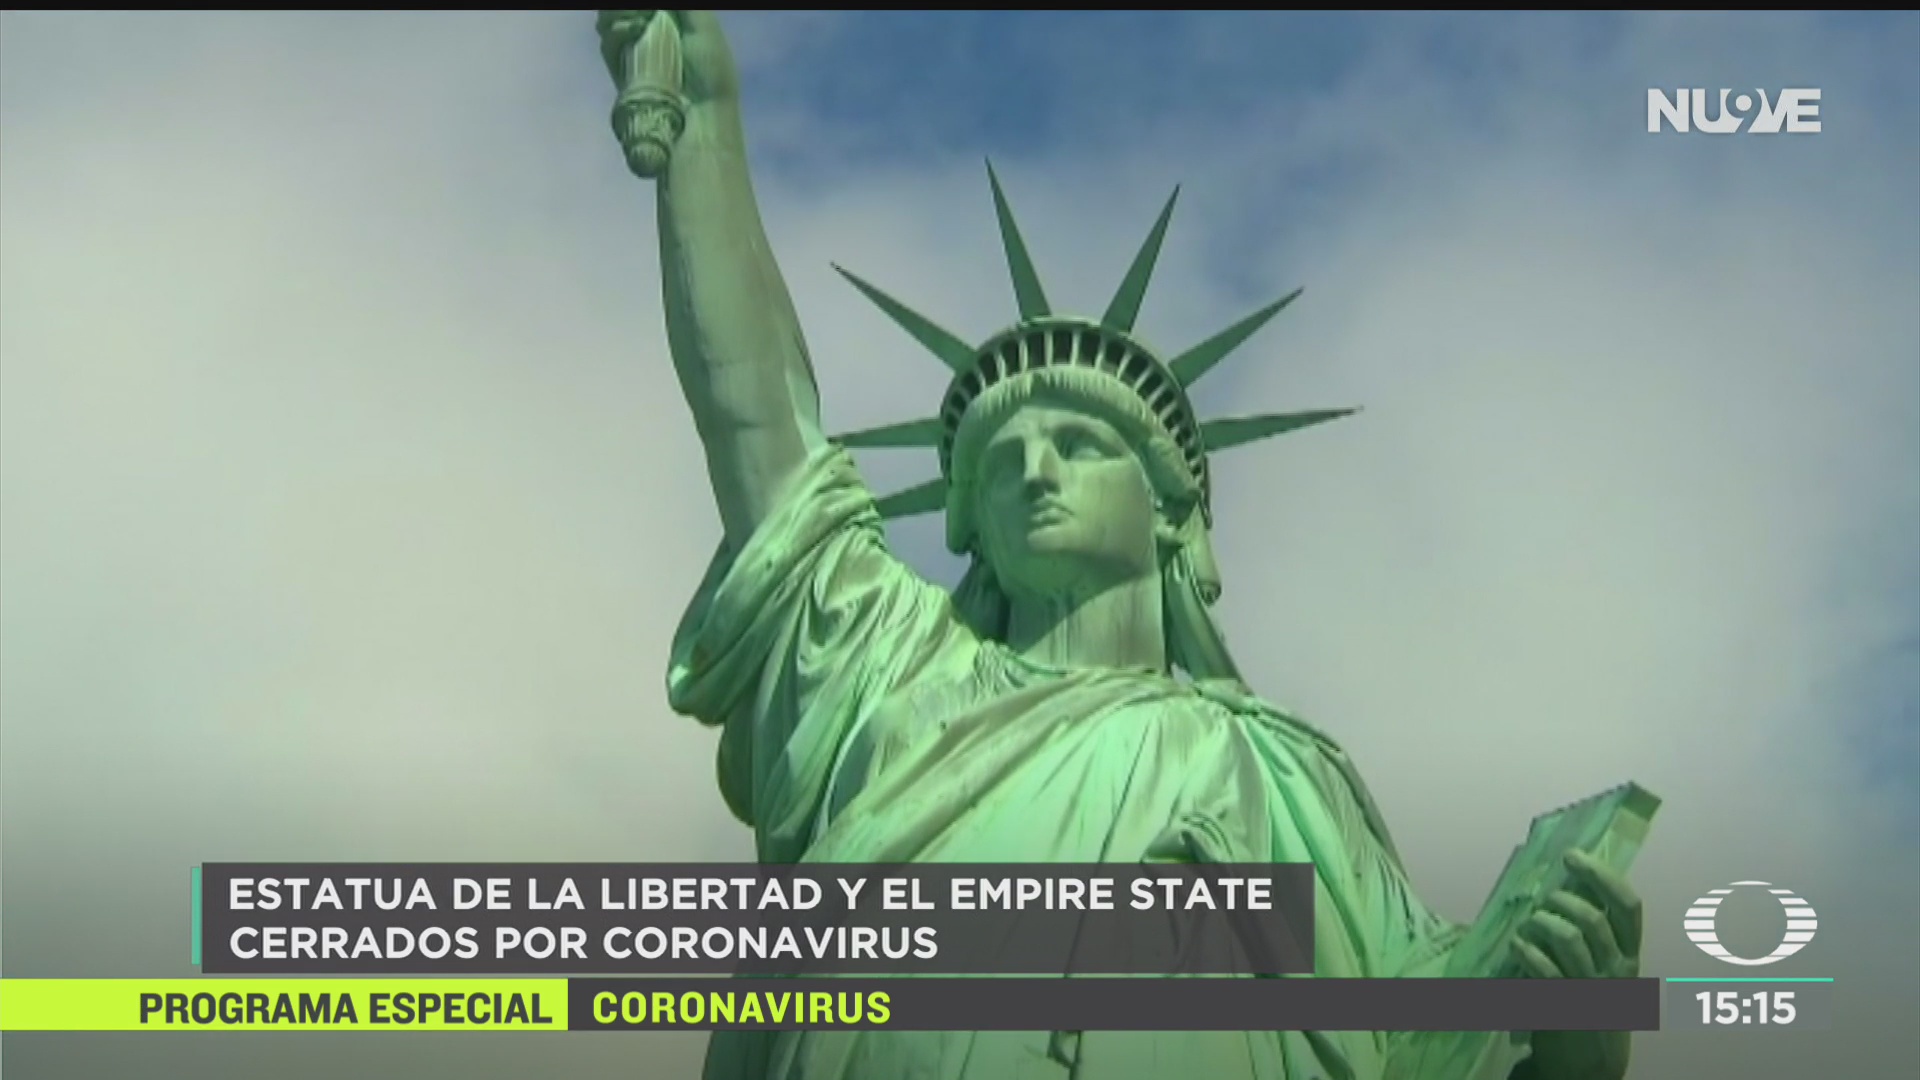 FOTO: cierran estatua de la libertad y el mirador empire state por coronavirus